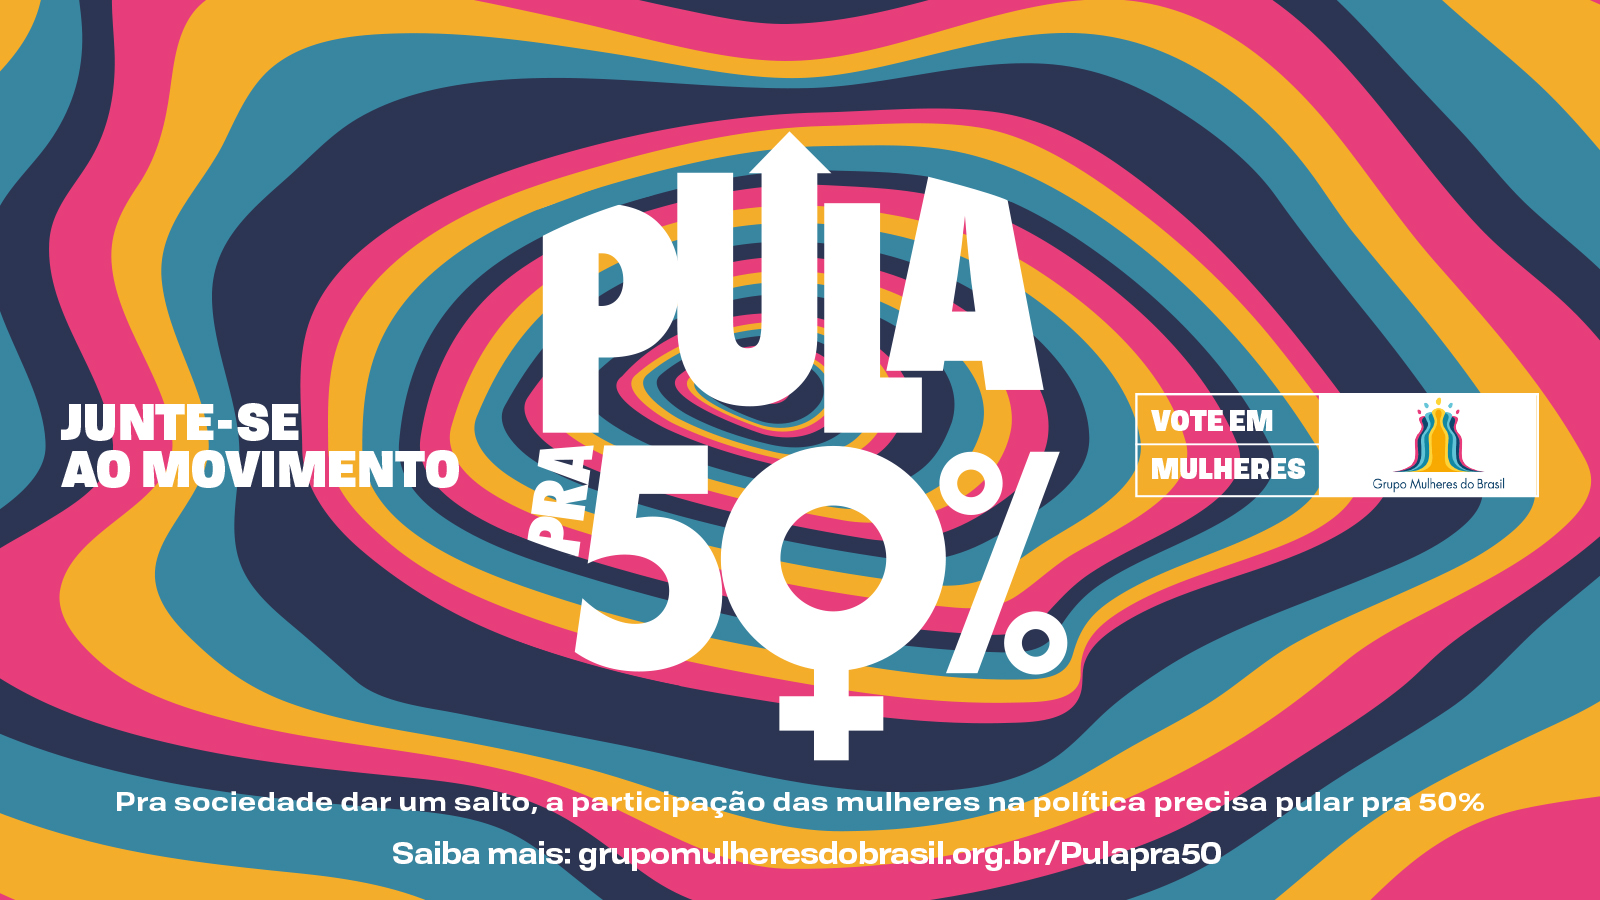 Grupo Mulheres do Brasil lança oficialmente o Movimento Pula pra 50